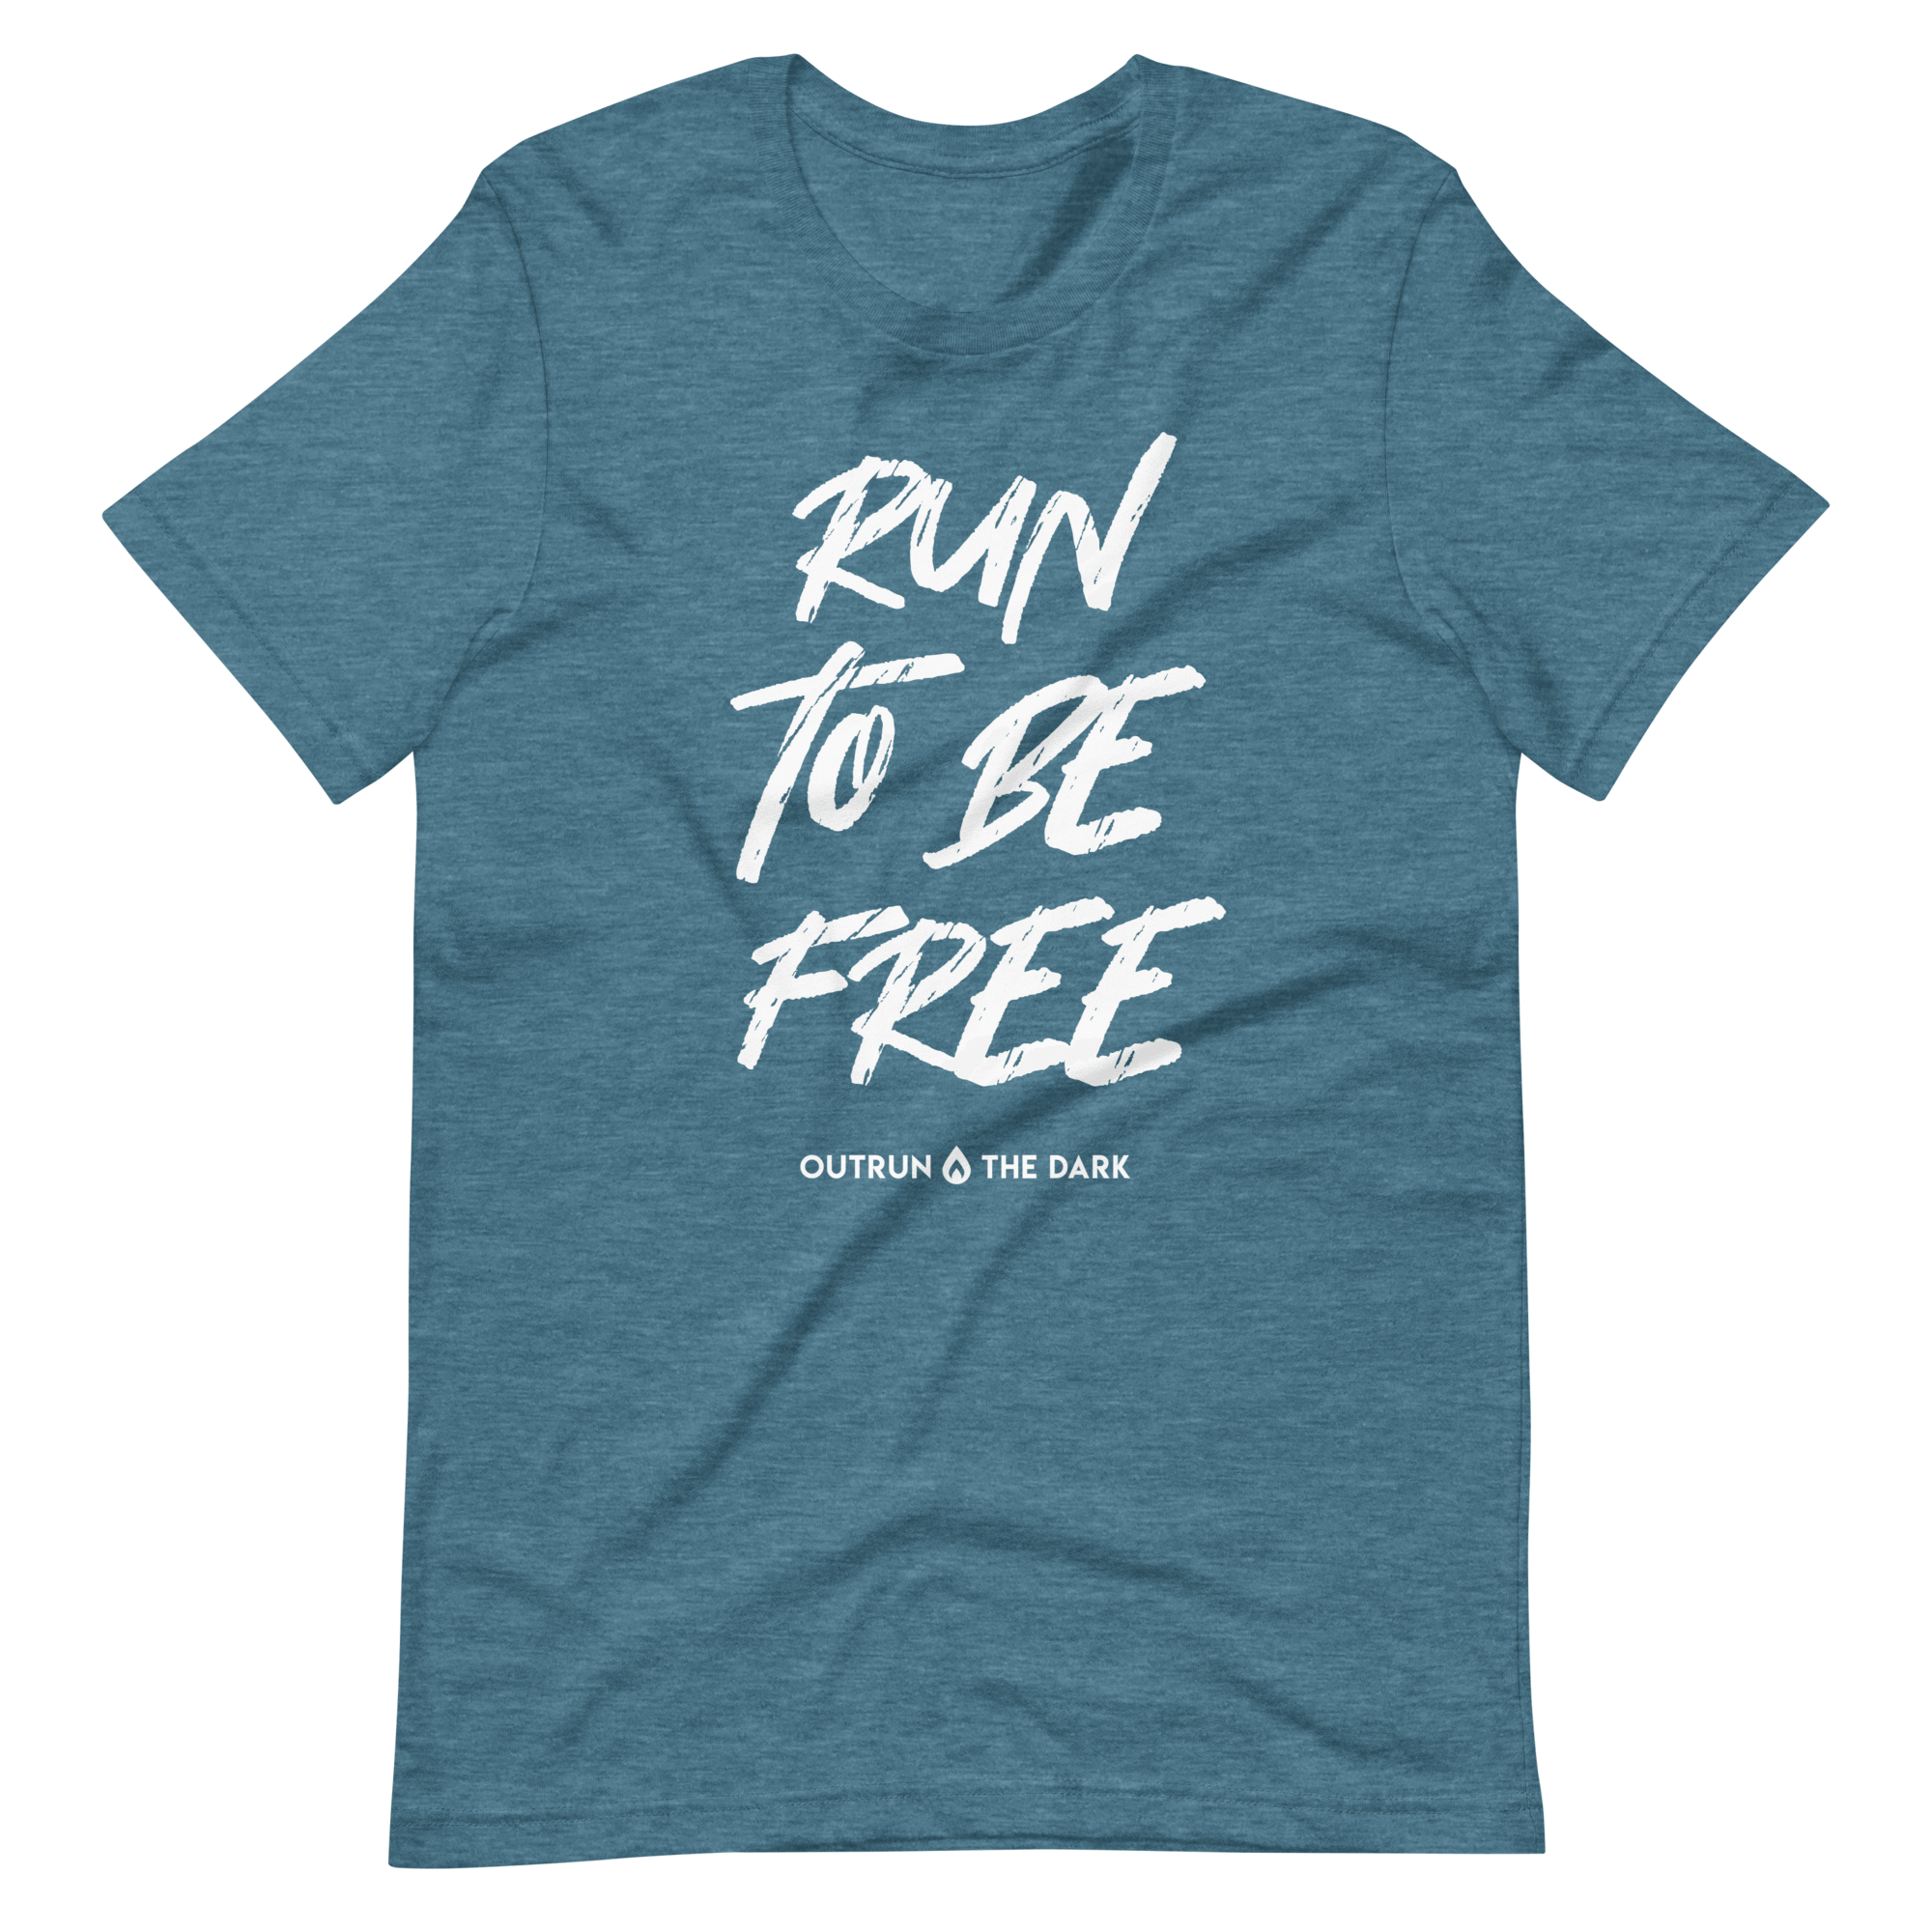 Run to be free Men's tee